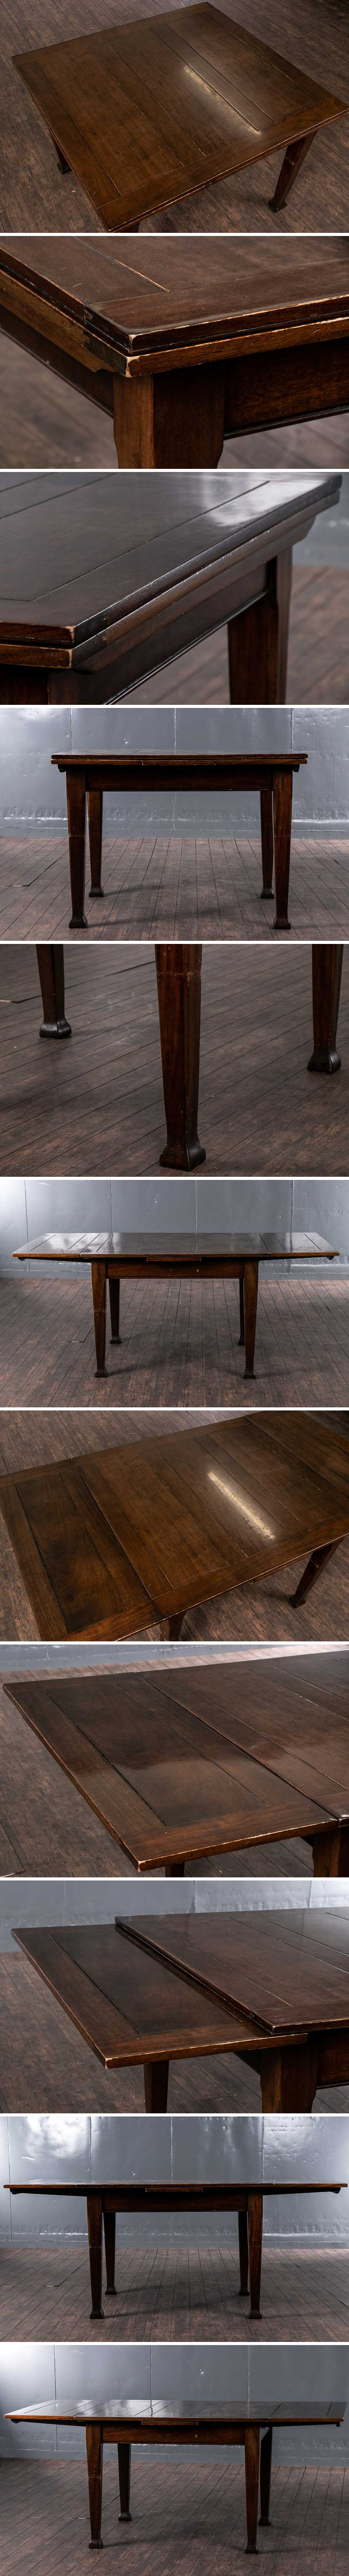 【買い新作】『ドローリーフテーブル ダイニングテーブル S410』家具 インテリア テーブル 机 アンティーク リビング アンティーク 西洋